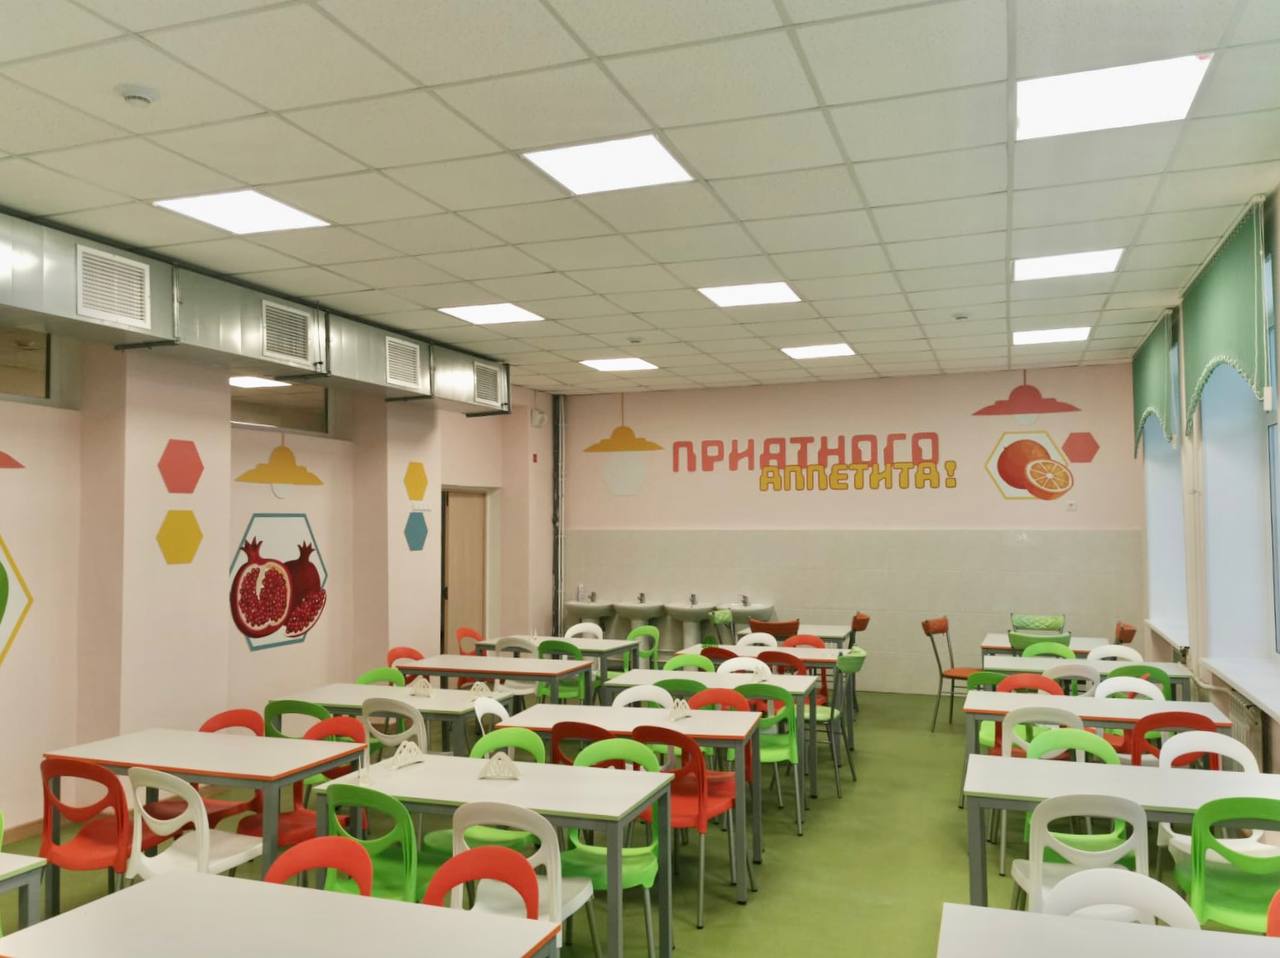 В Нижнем Новгороде показали новый ремонт в старой школе